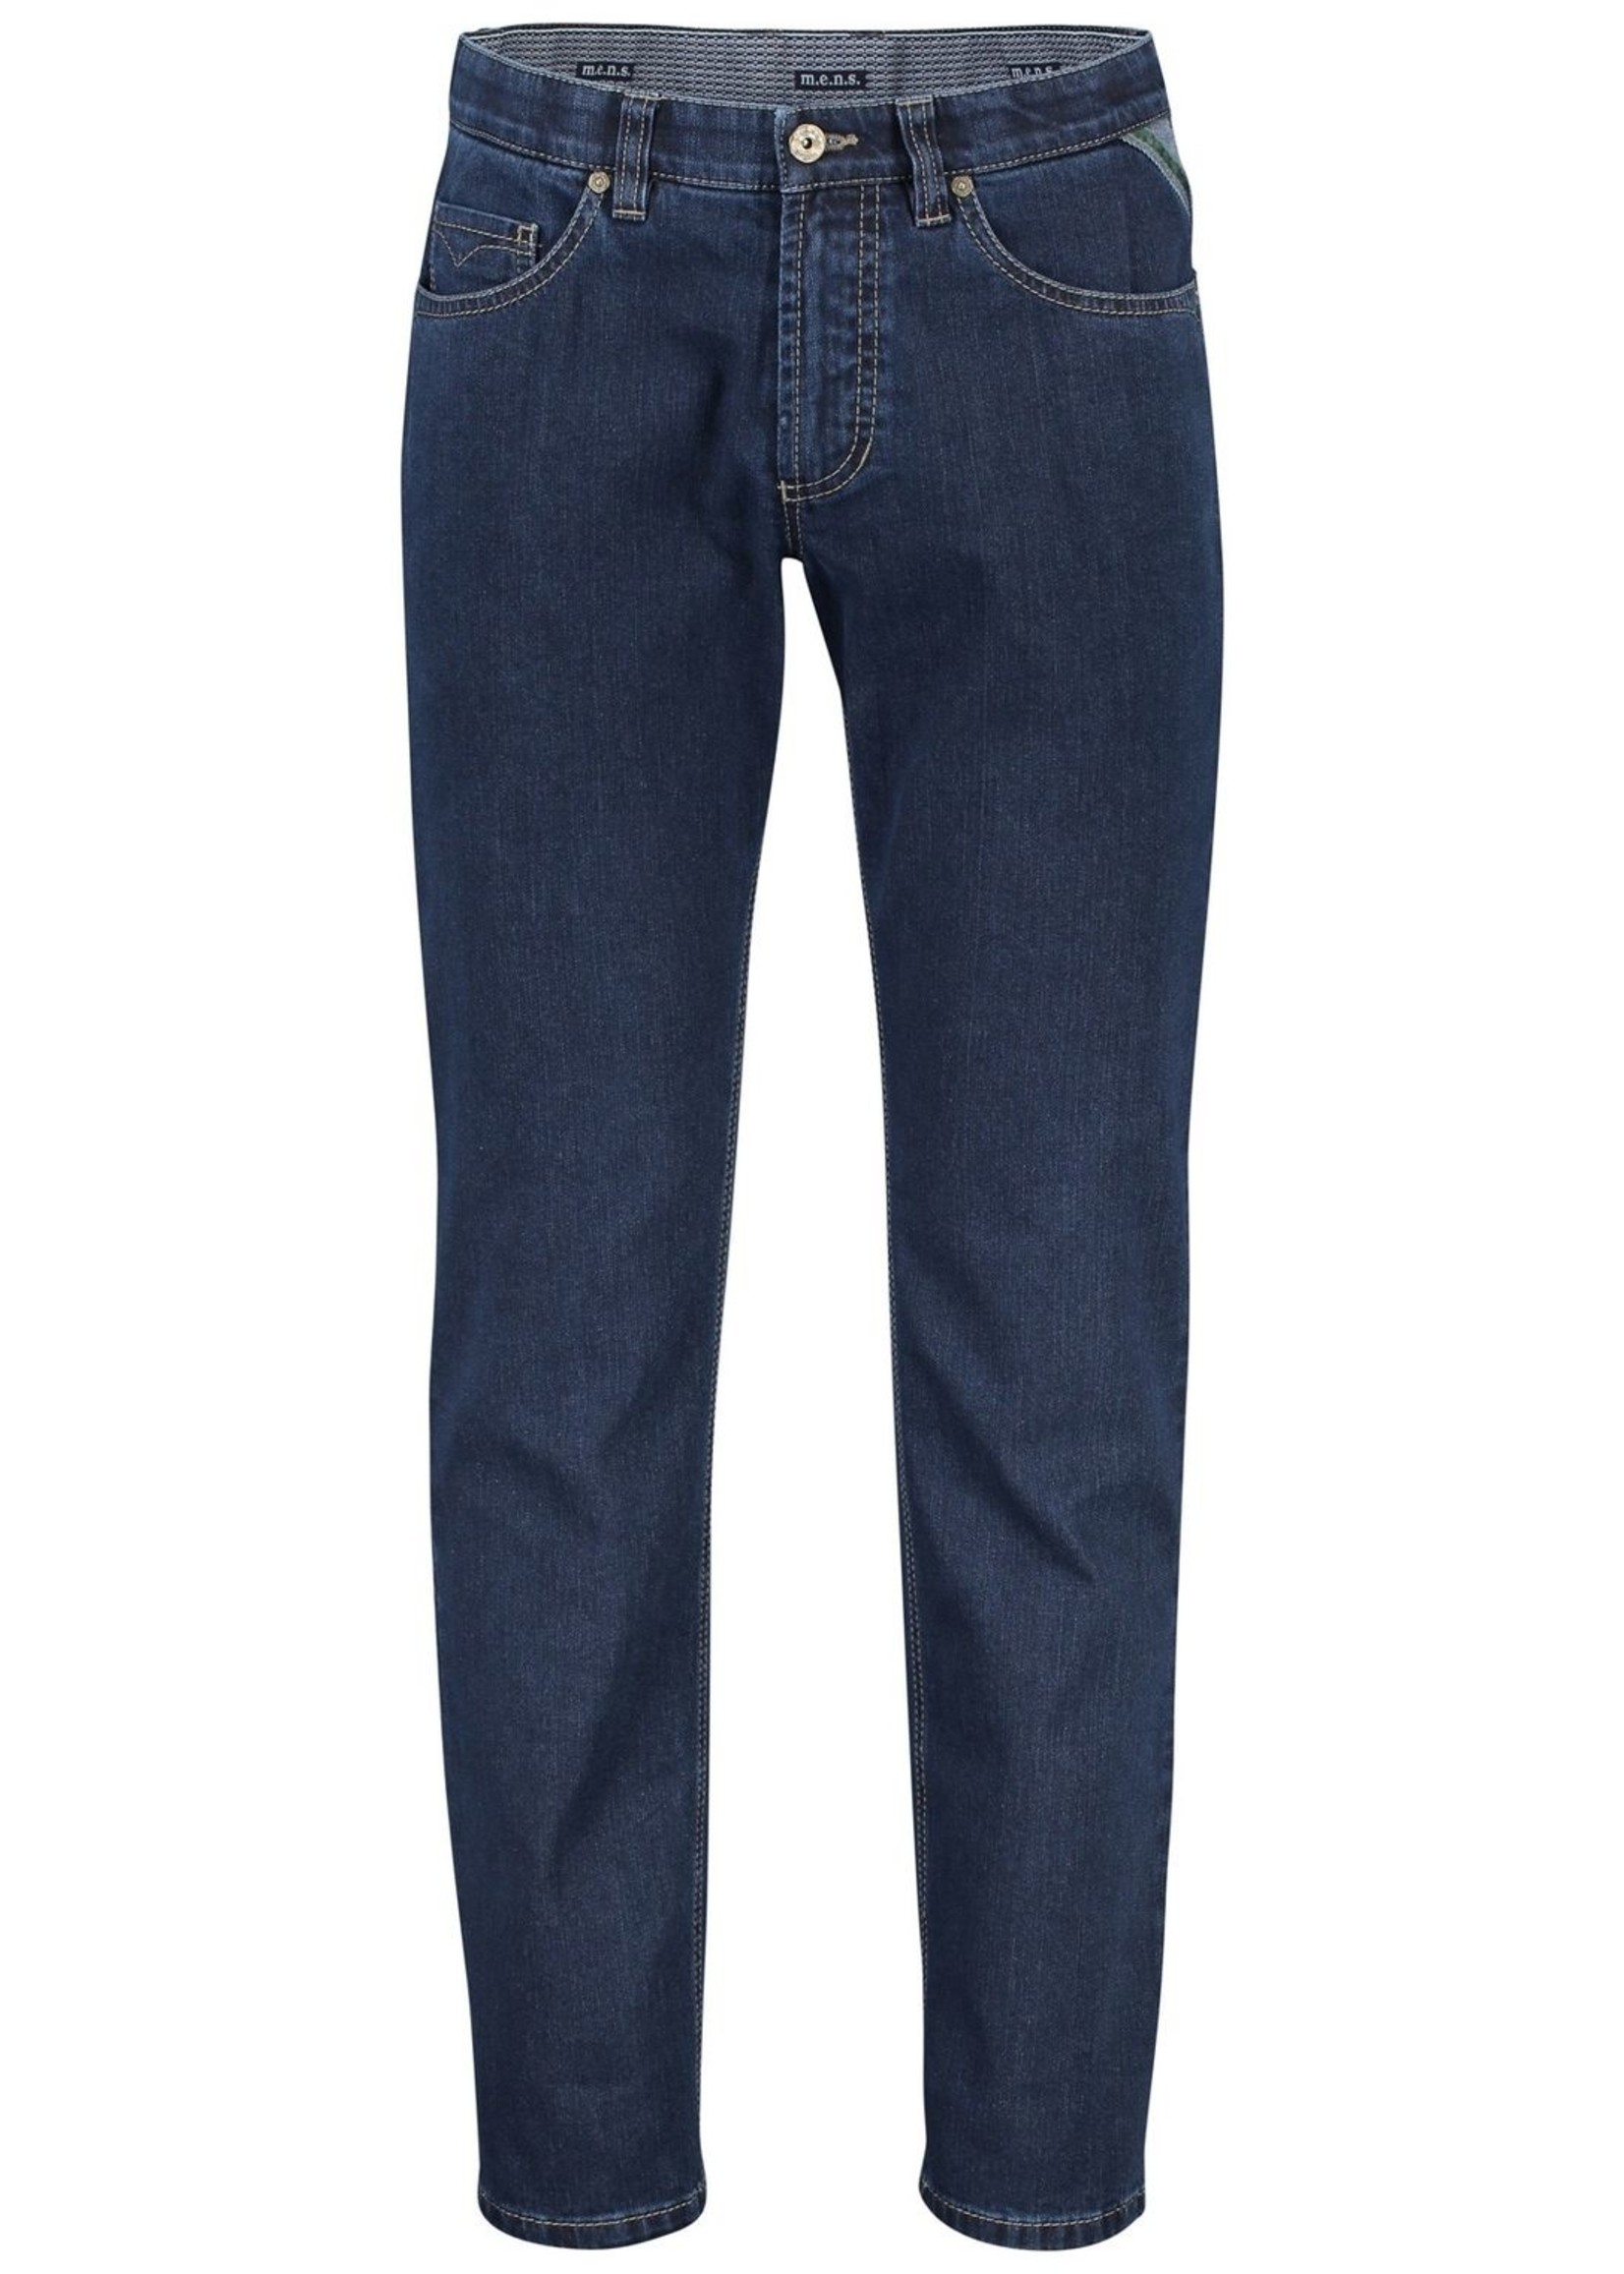 M.E.N.S. Detroit five pocket jeans